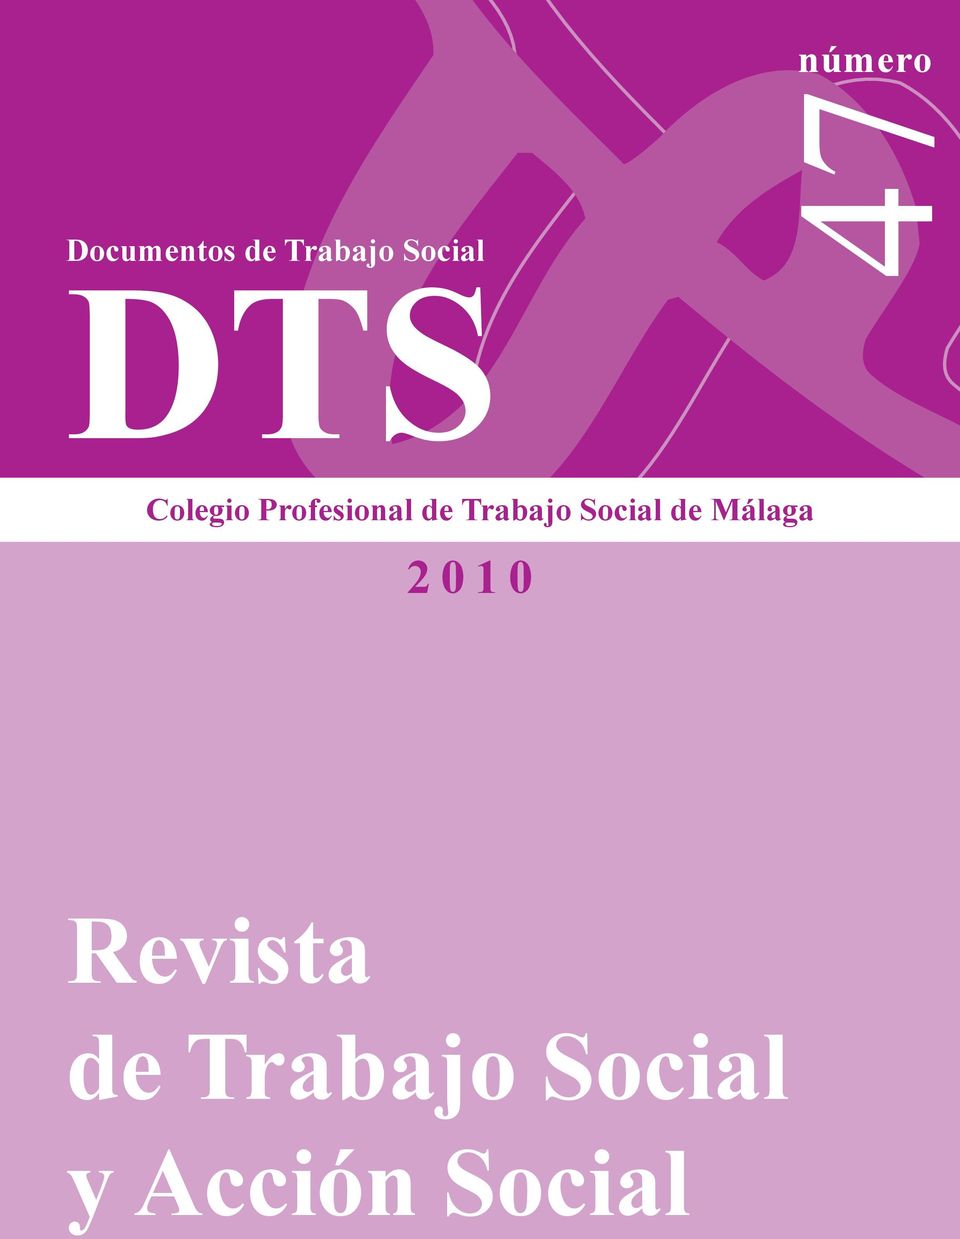 Trabajo Social de Málaga 2 0 1 0